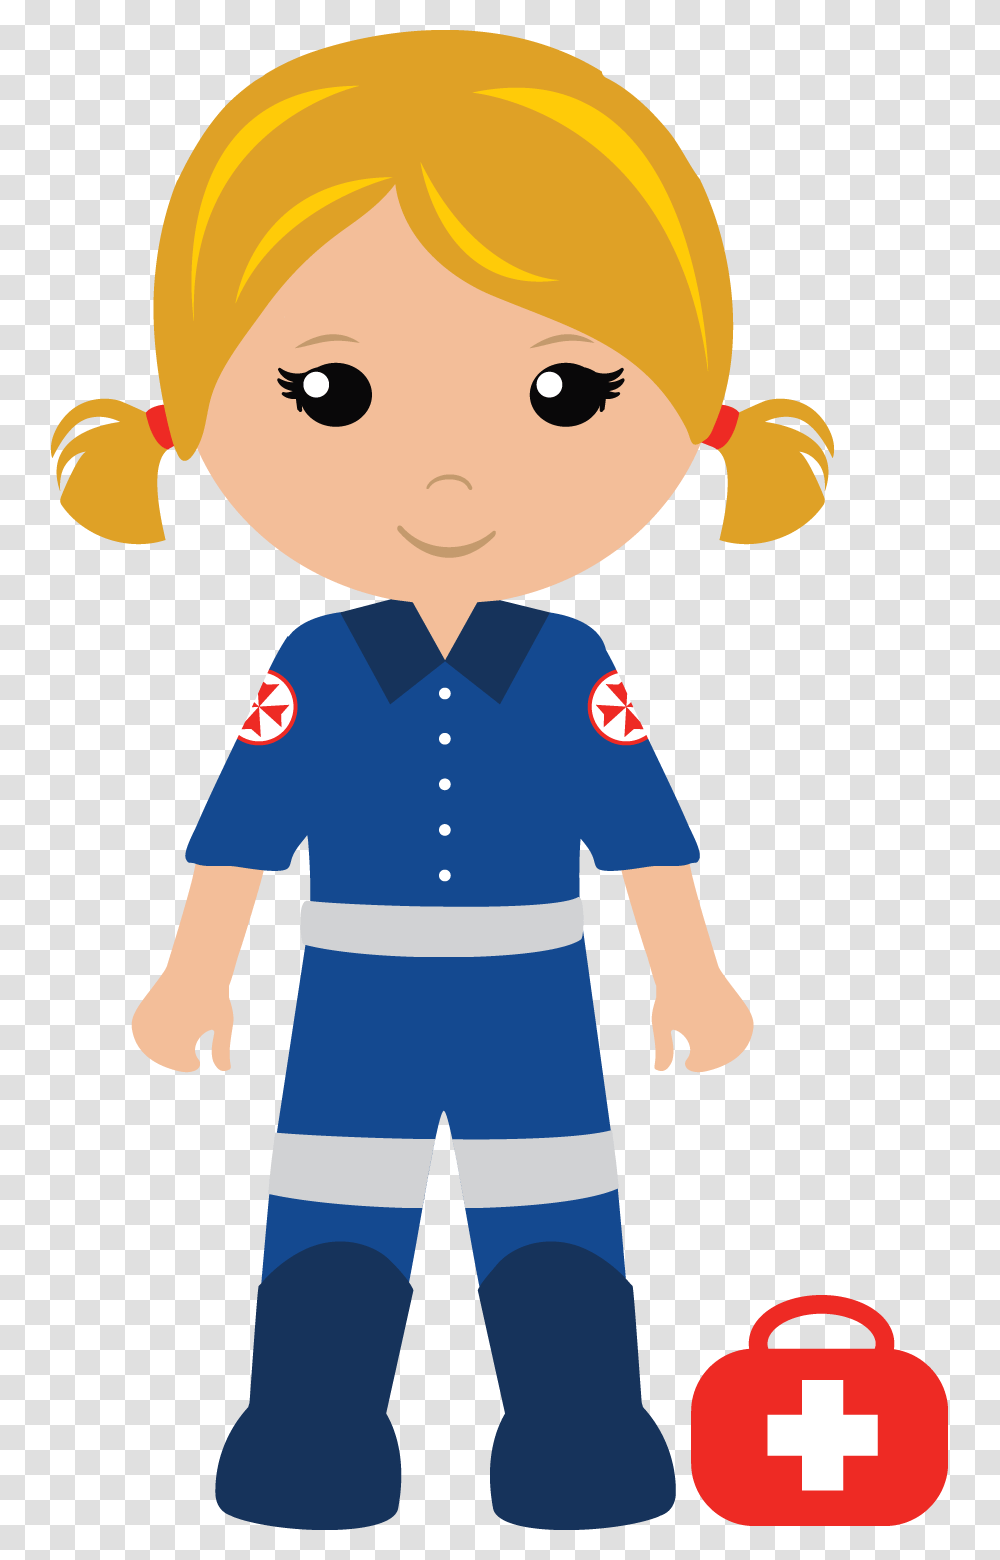 Kidzaid Australia Little Paramedic, Person, Human, Sailor Suit, Military Uniform Transparent Png